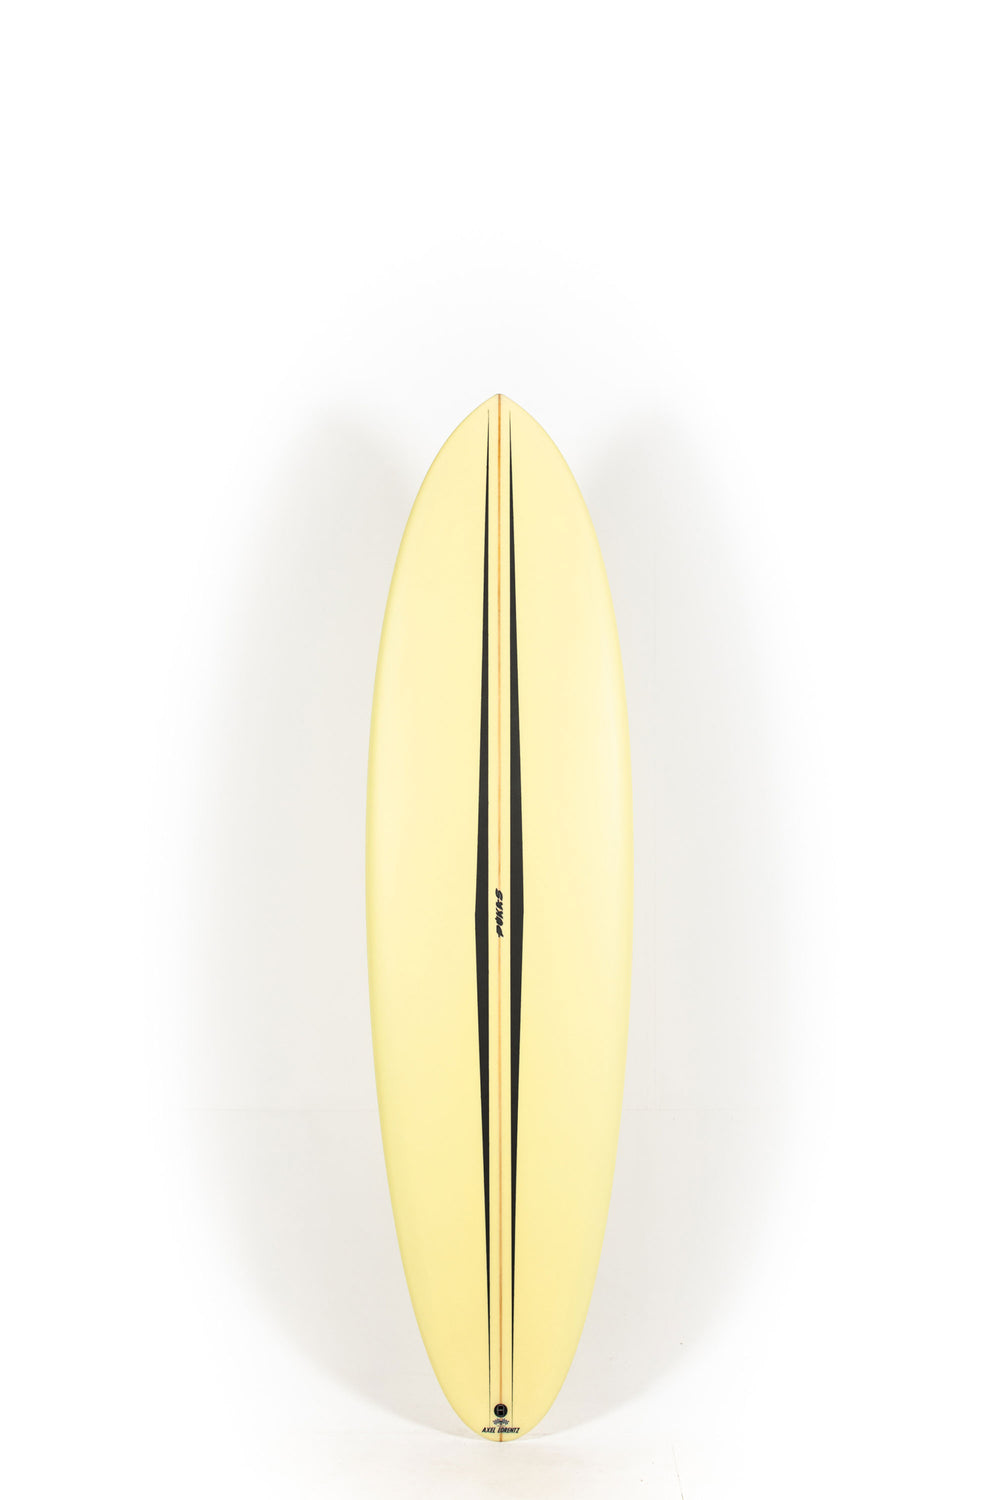 Pukas Surf Shop - Pukas Surfboard - LA CÔTE by Axel Lorentz - 6'10